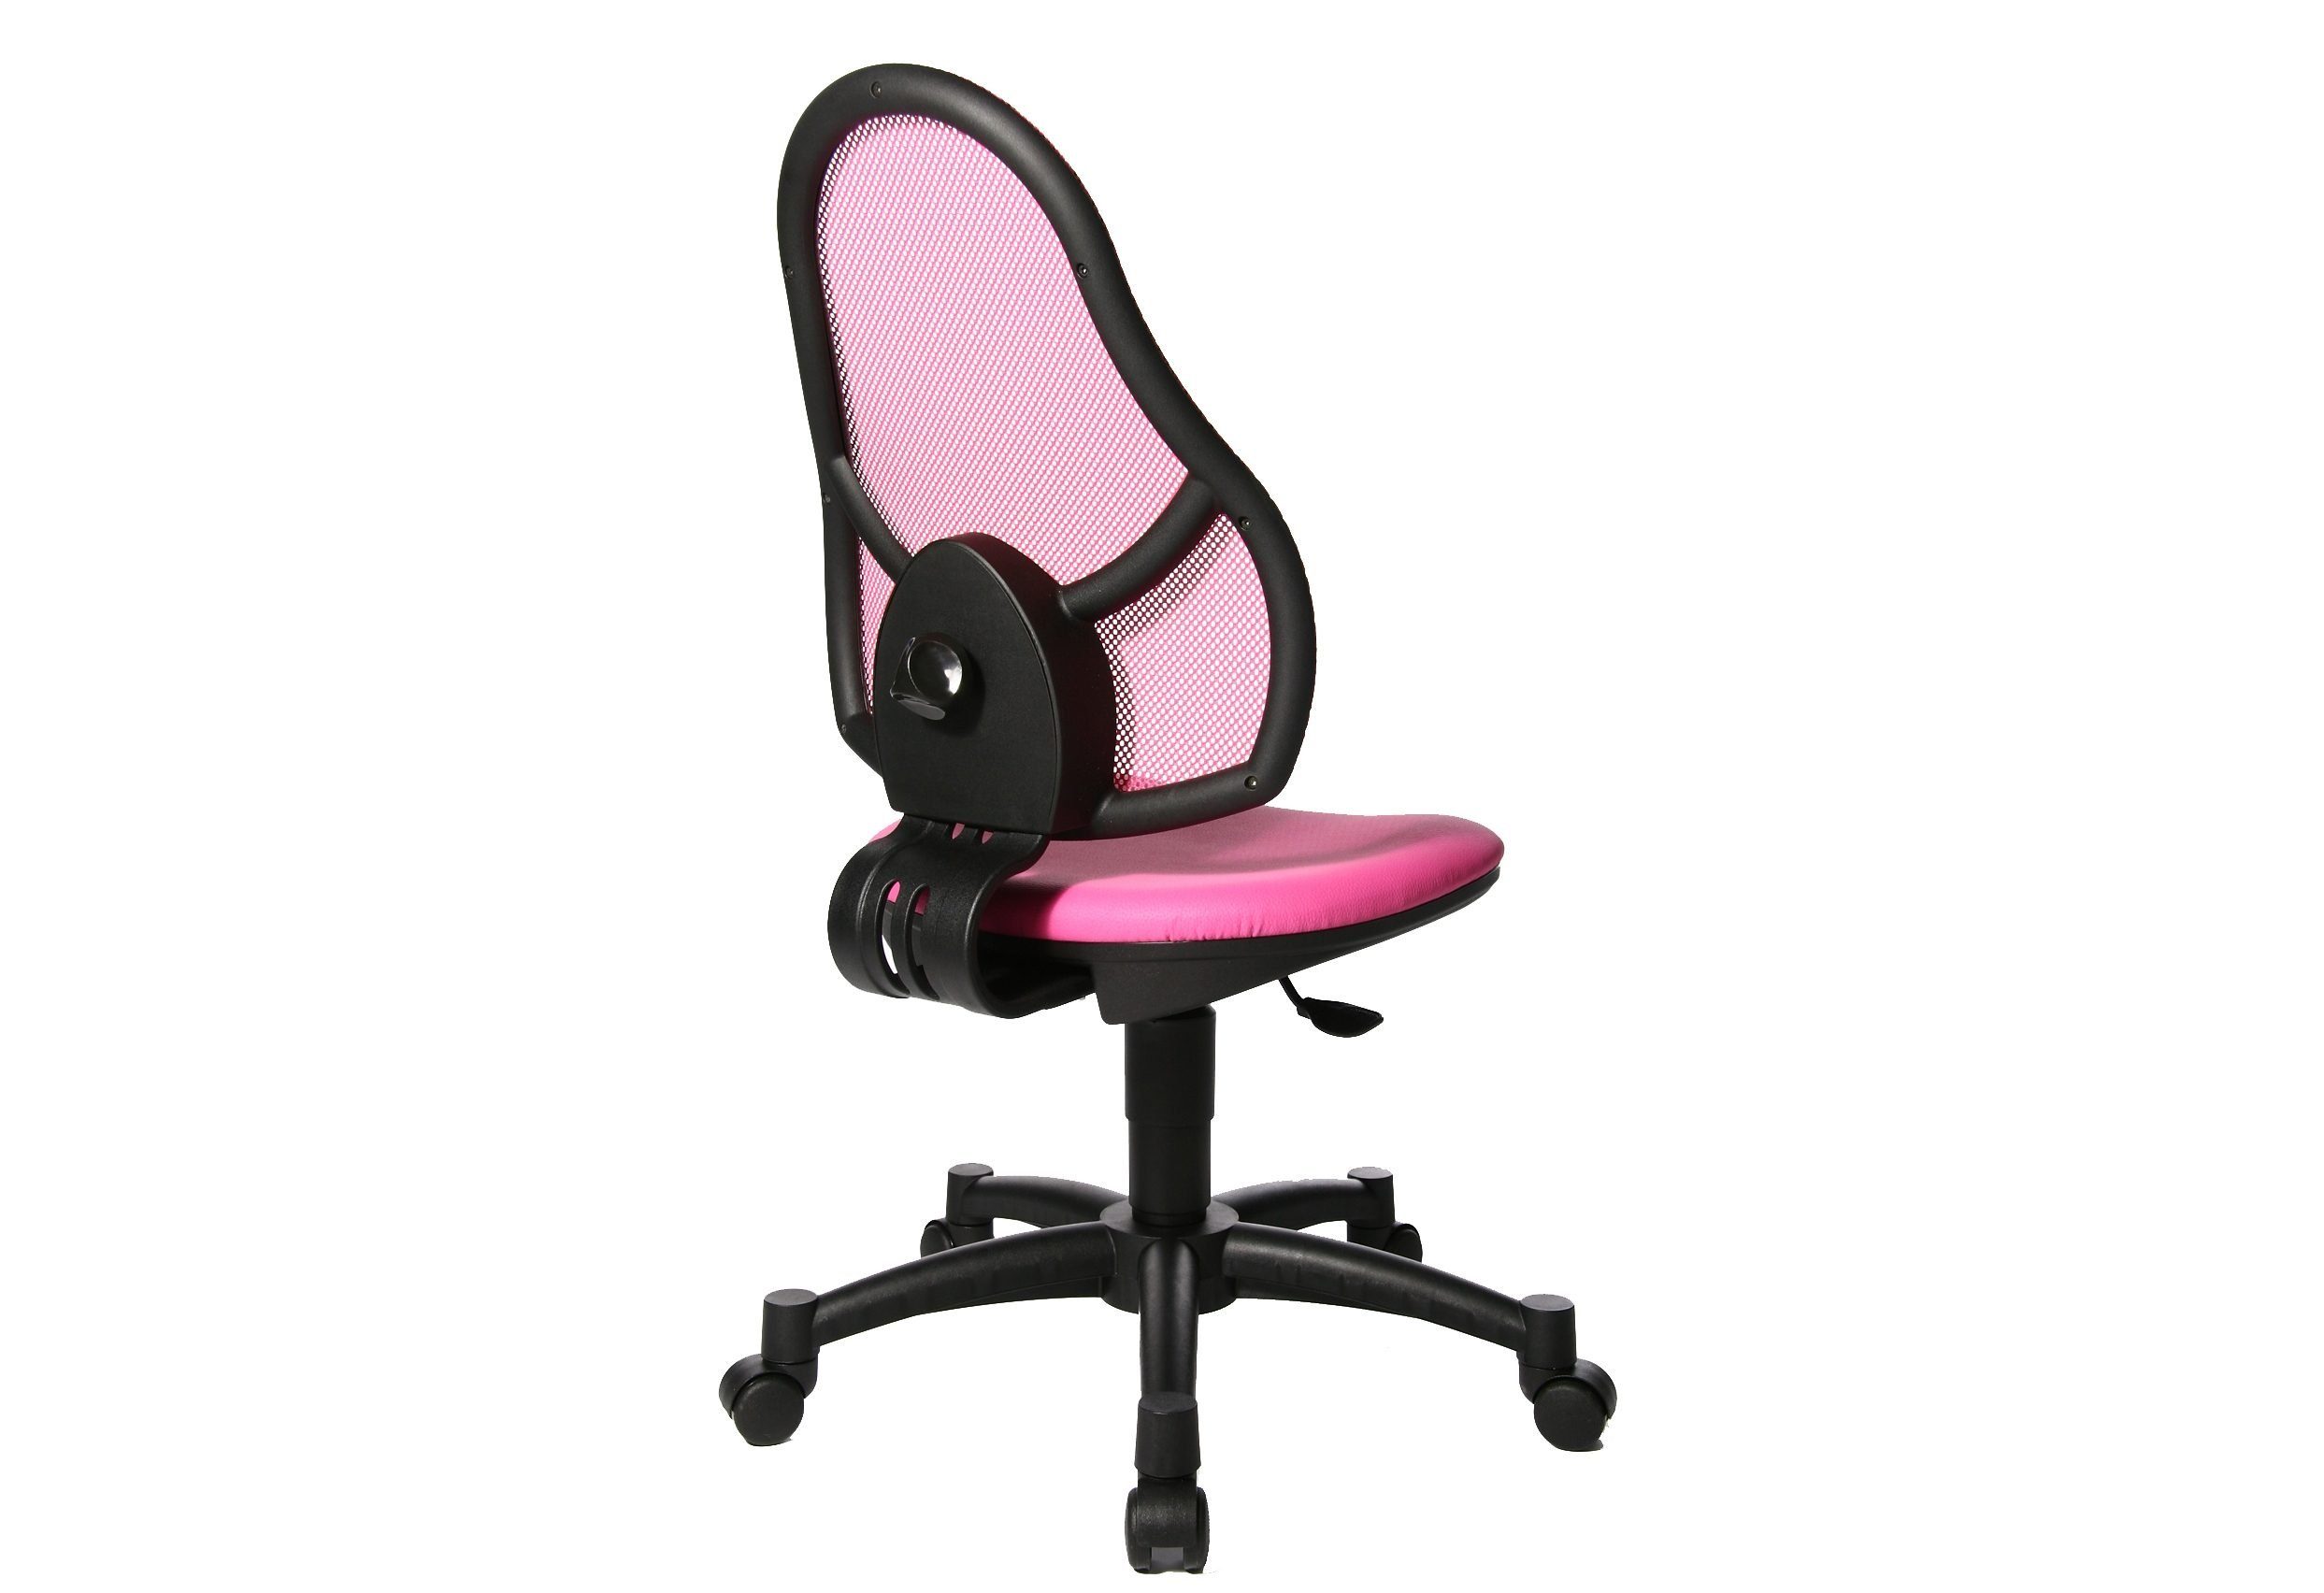 TOPSTAR Bürostuhl, für Kinder geeignet, Farben in pink 4